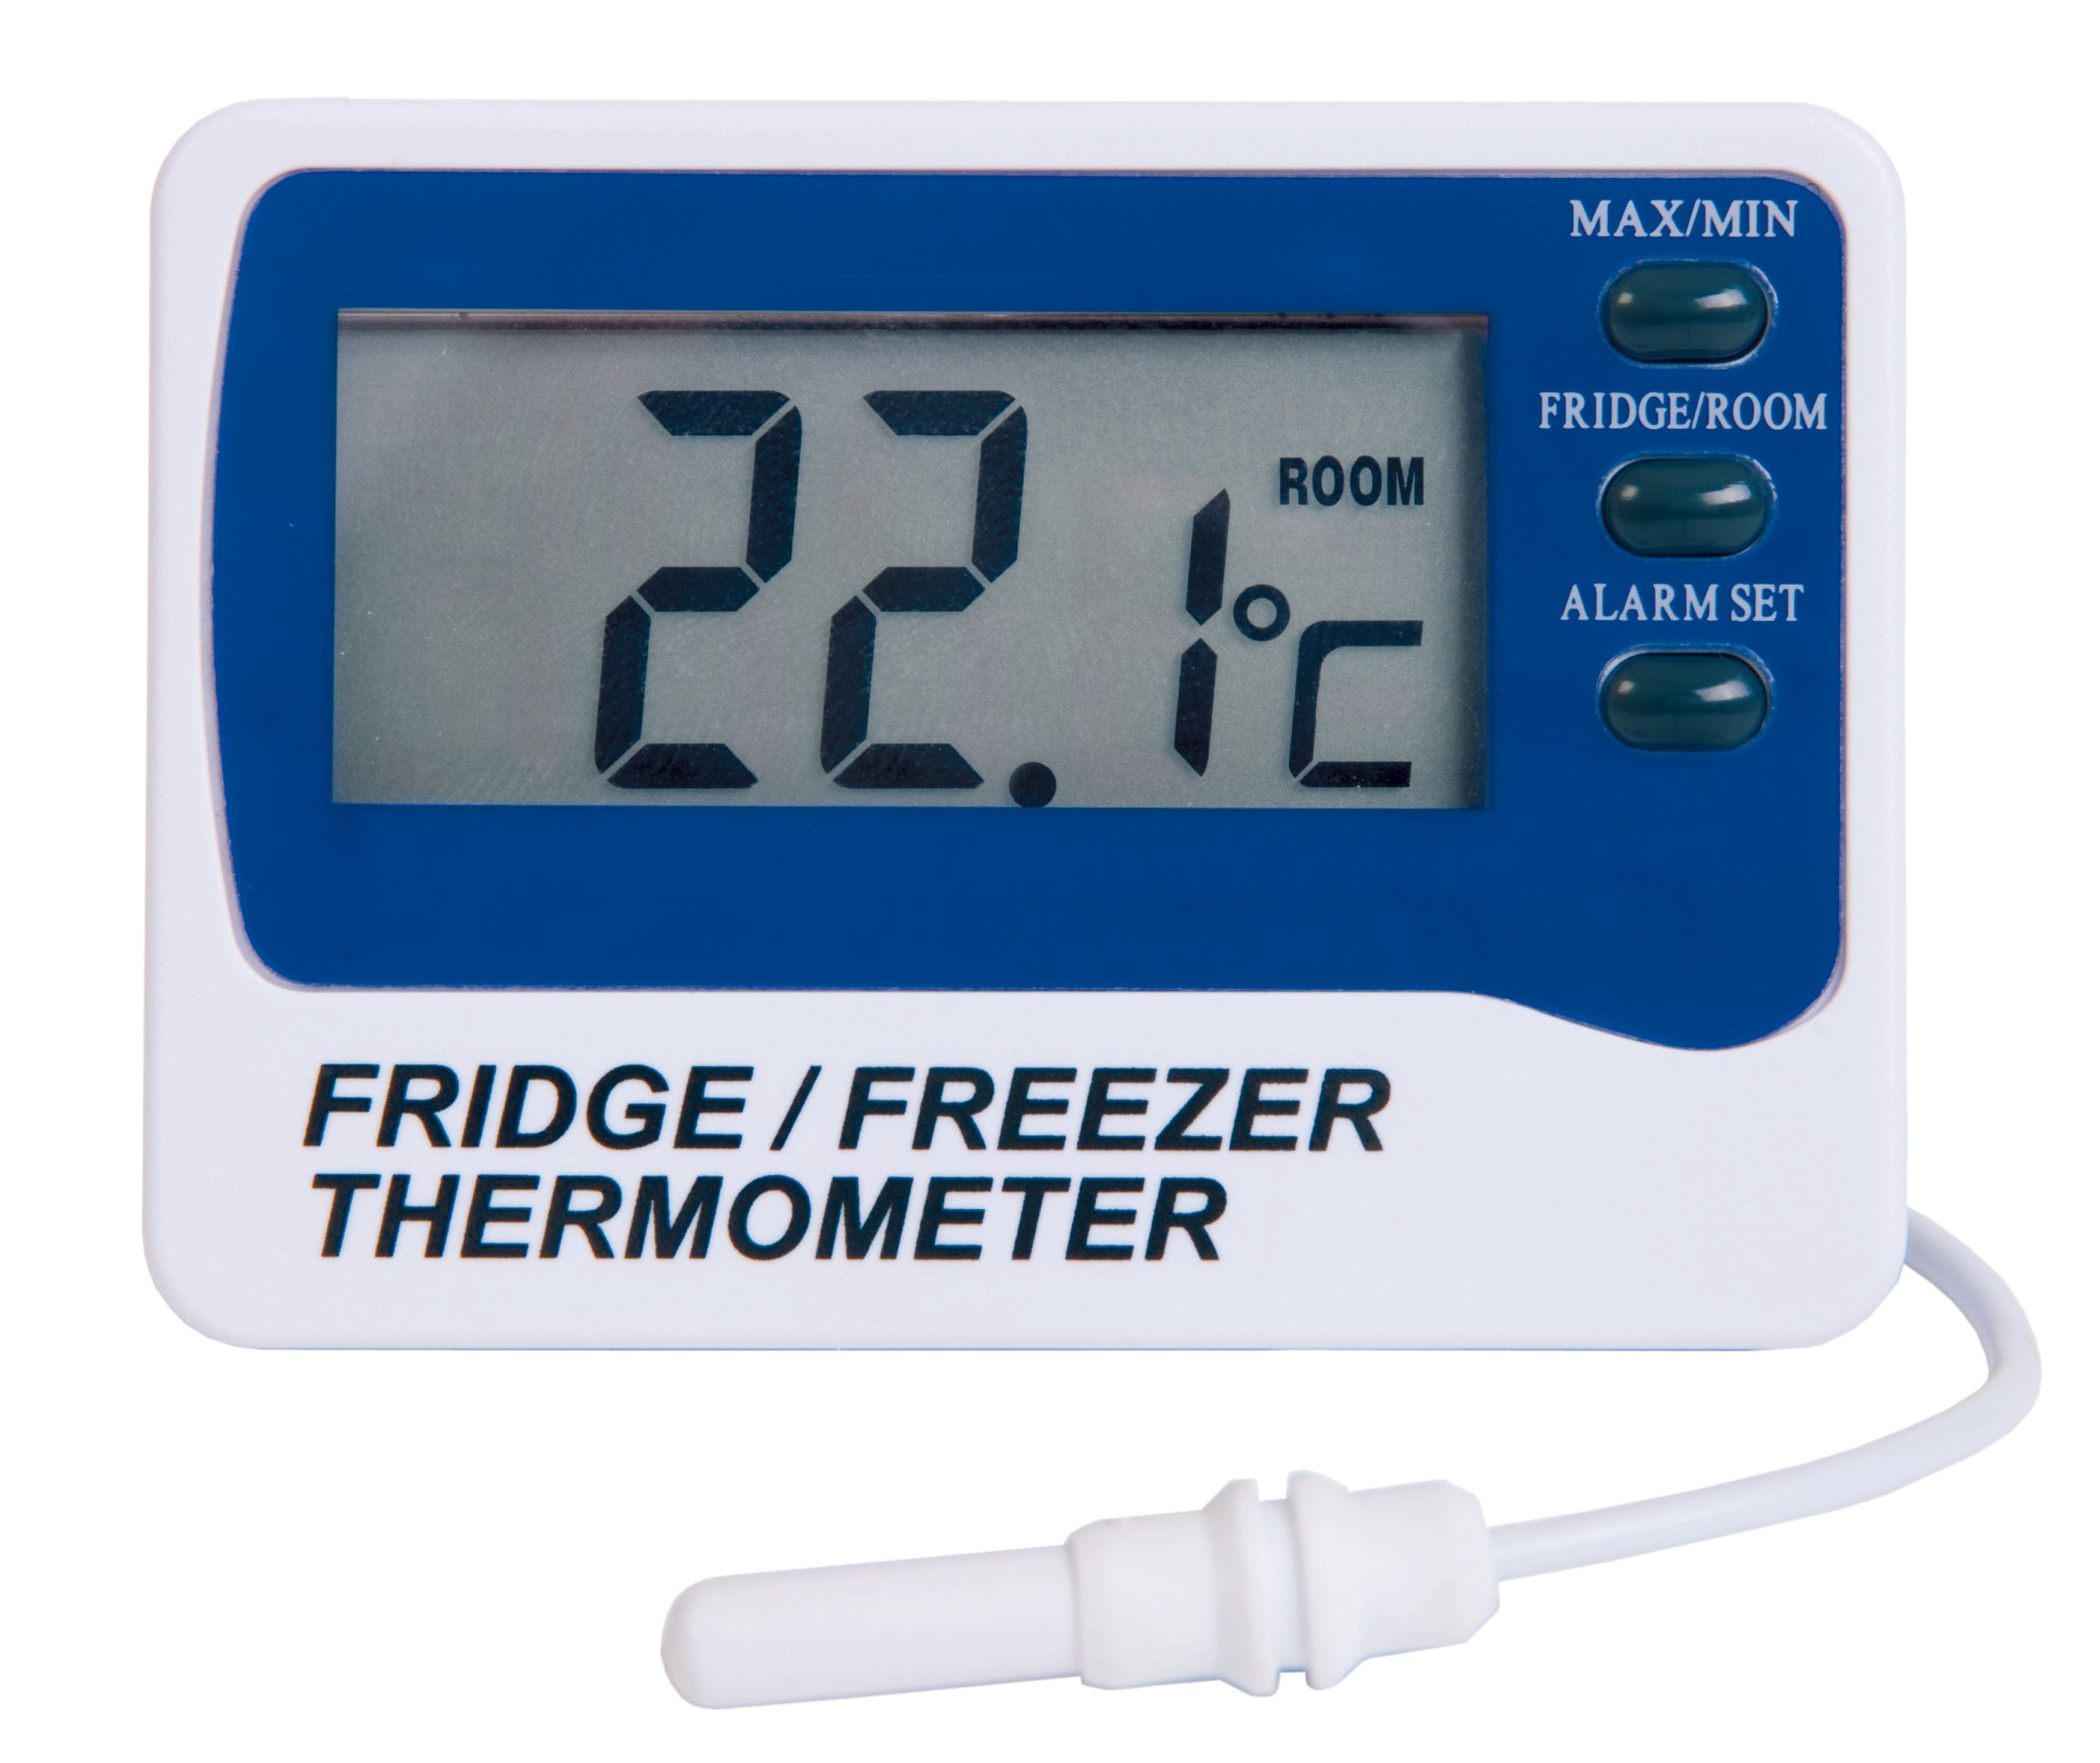 Kaufen Sie China Großhandels-Kühlschrank Gefrier Schrank Alarm Thermometer  Mit Licht Buzzer Alarm Anzeige und Kühlschrank Gefrier Schrank Alarm  Thermometer Großhandelsanbietern zu einem Preis von 8 USD